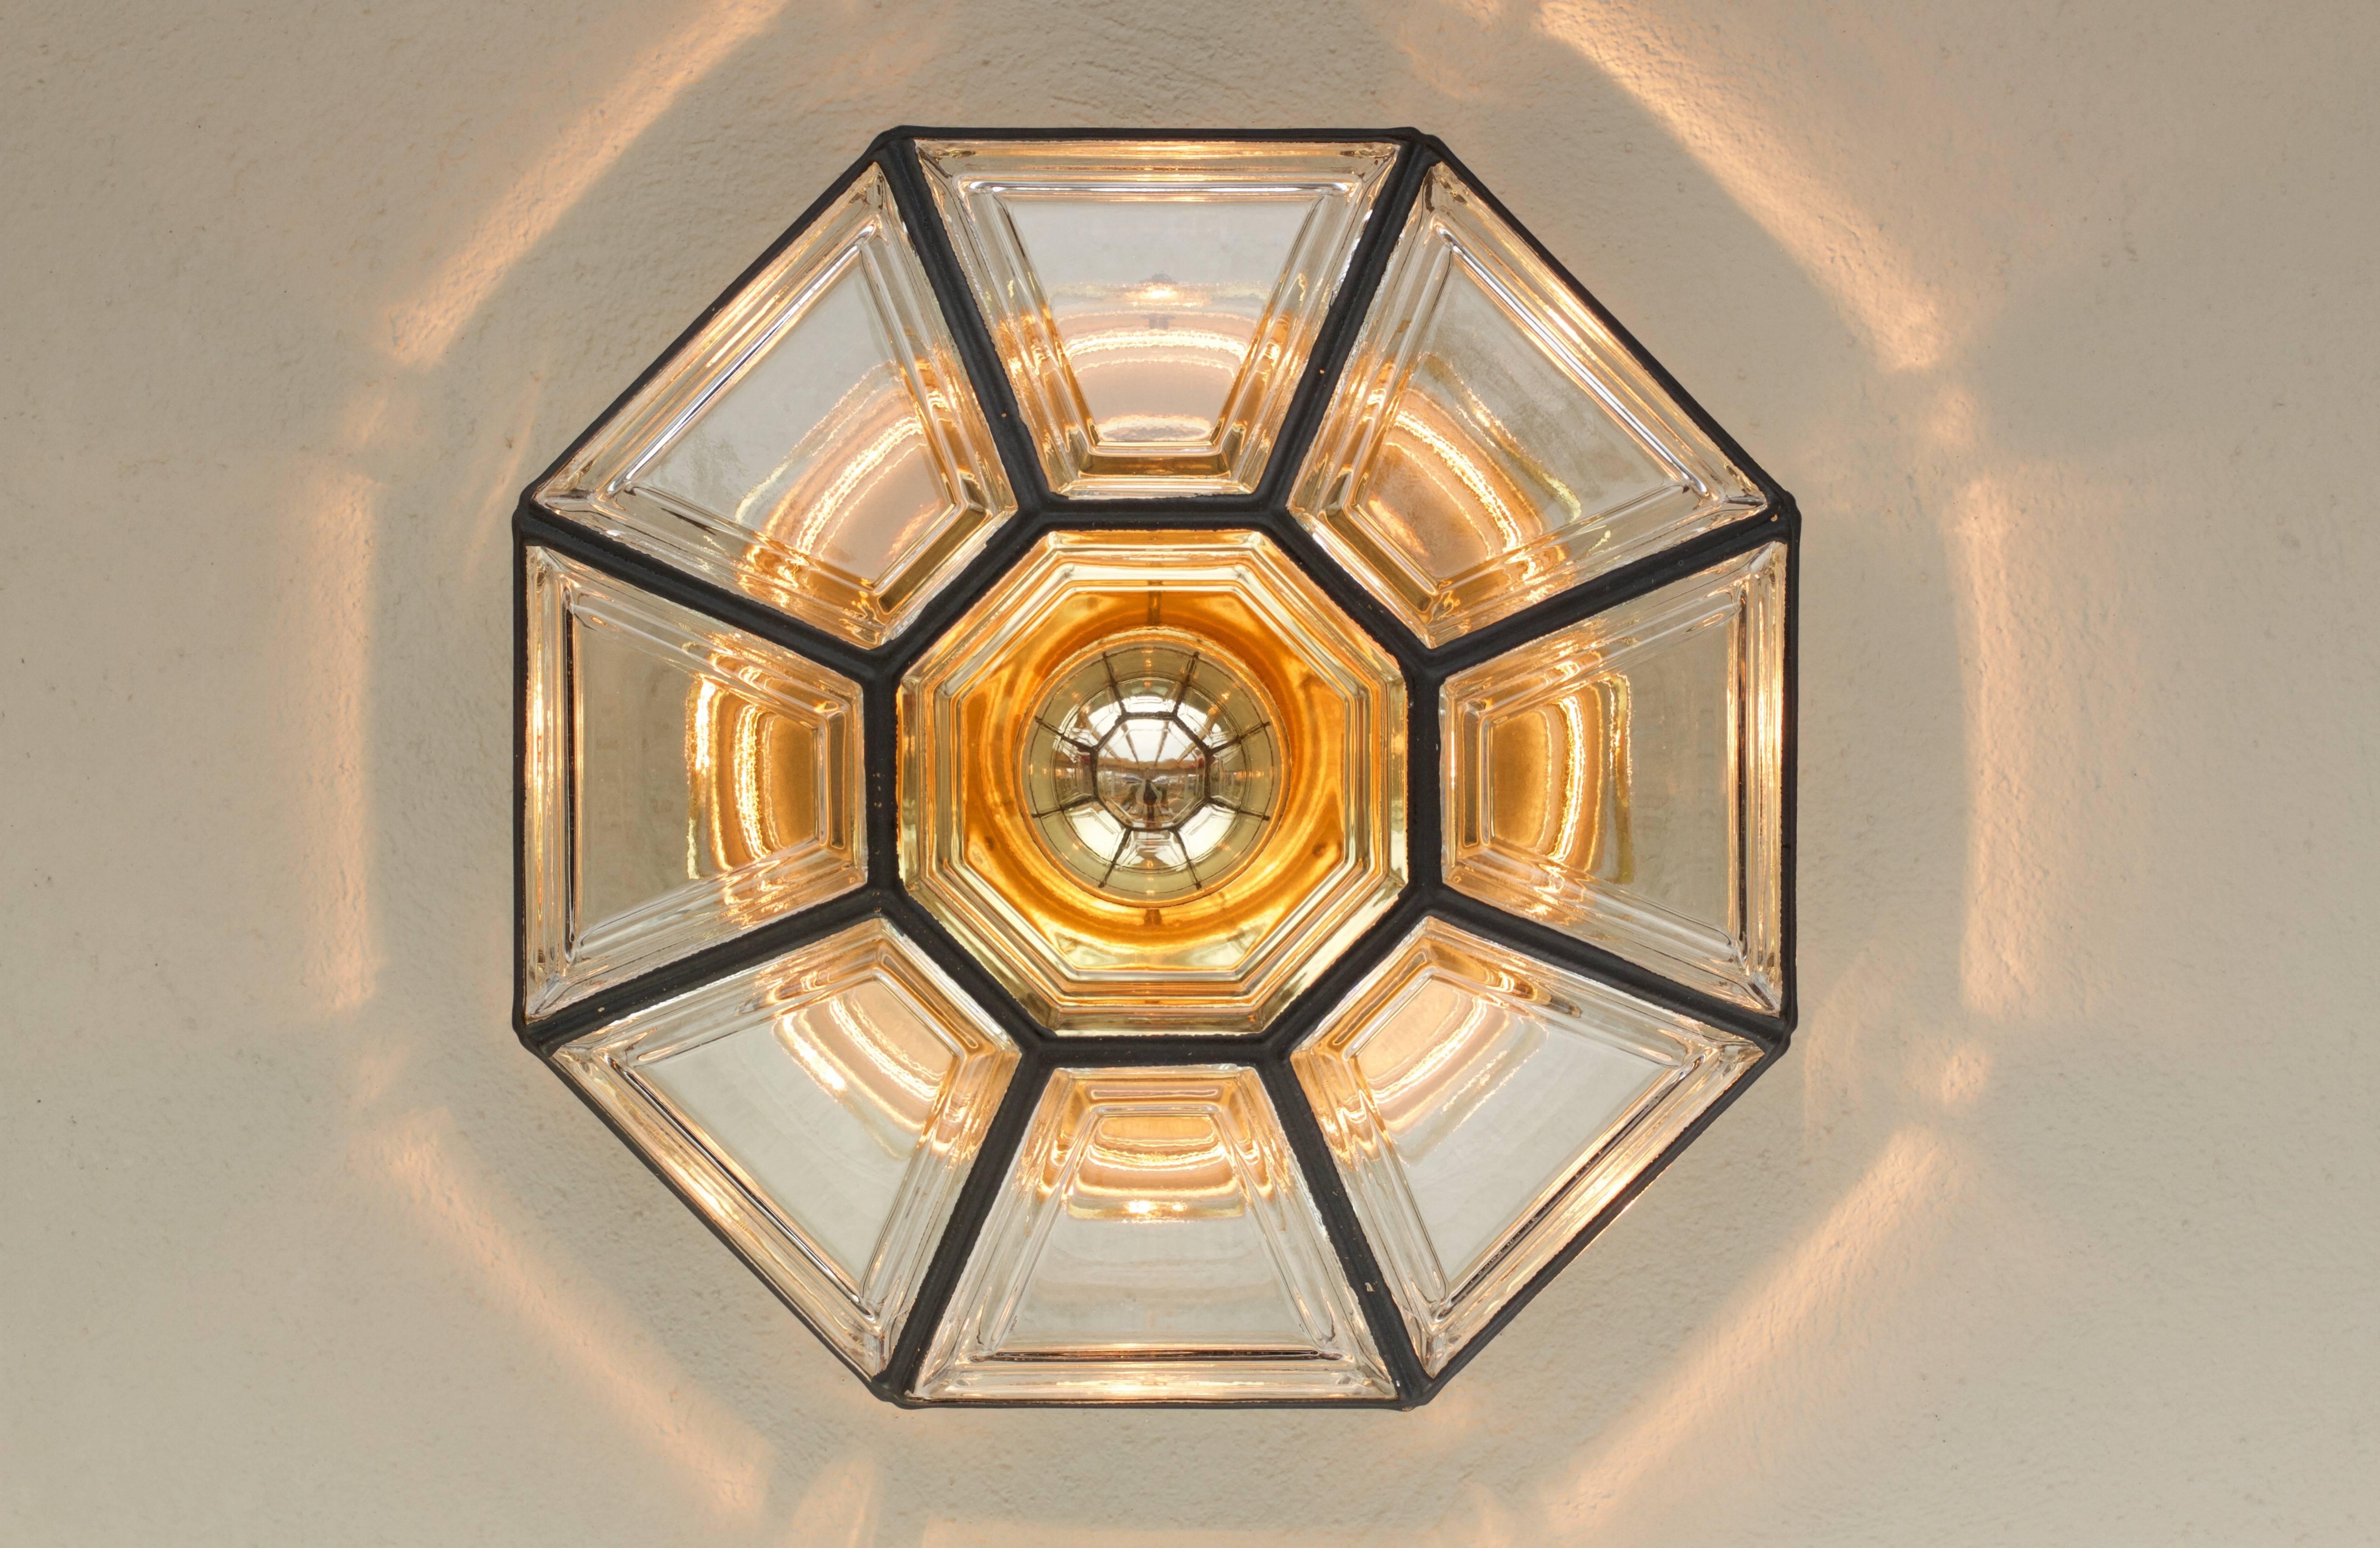 Luminaire encastré de forme octogonale, de style minimaliste, datant du milieu du siècle dernier et fabriqué en Allemagne par Glashütte Limburg, vers 1965. Ce Plafonnier contemporain de style Art Déco et lanterne projette une lumière fantastique